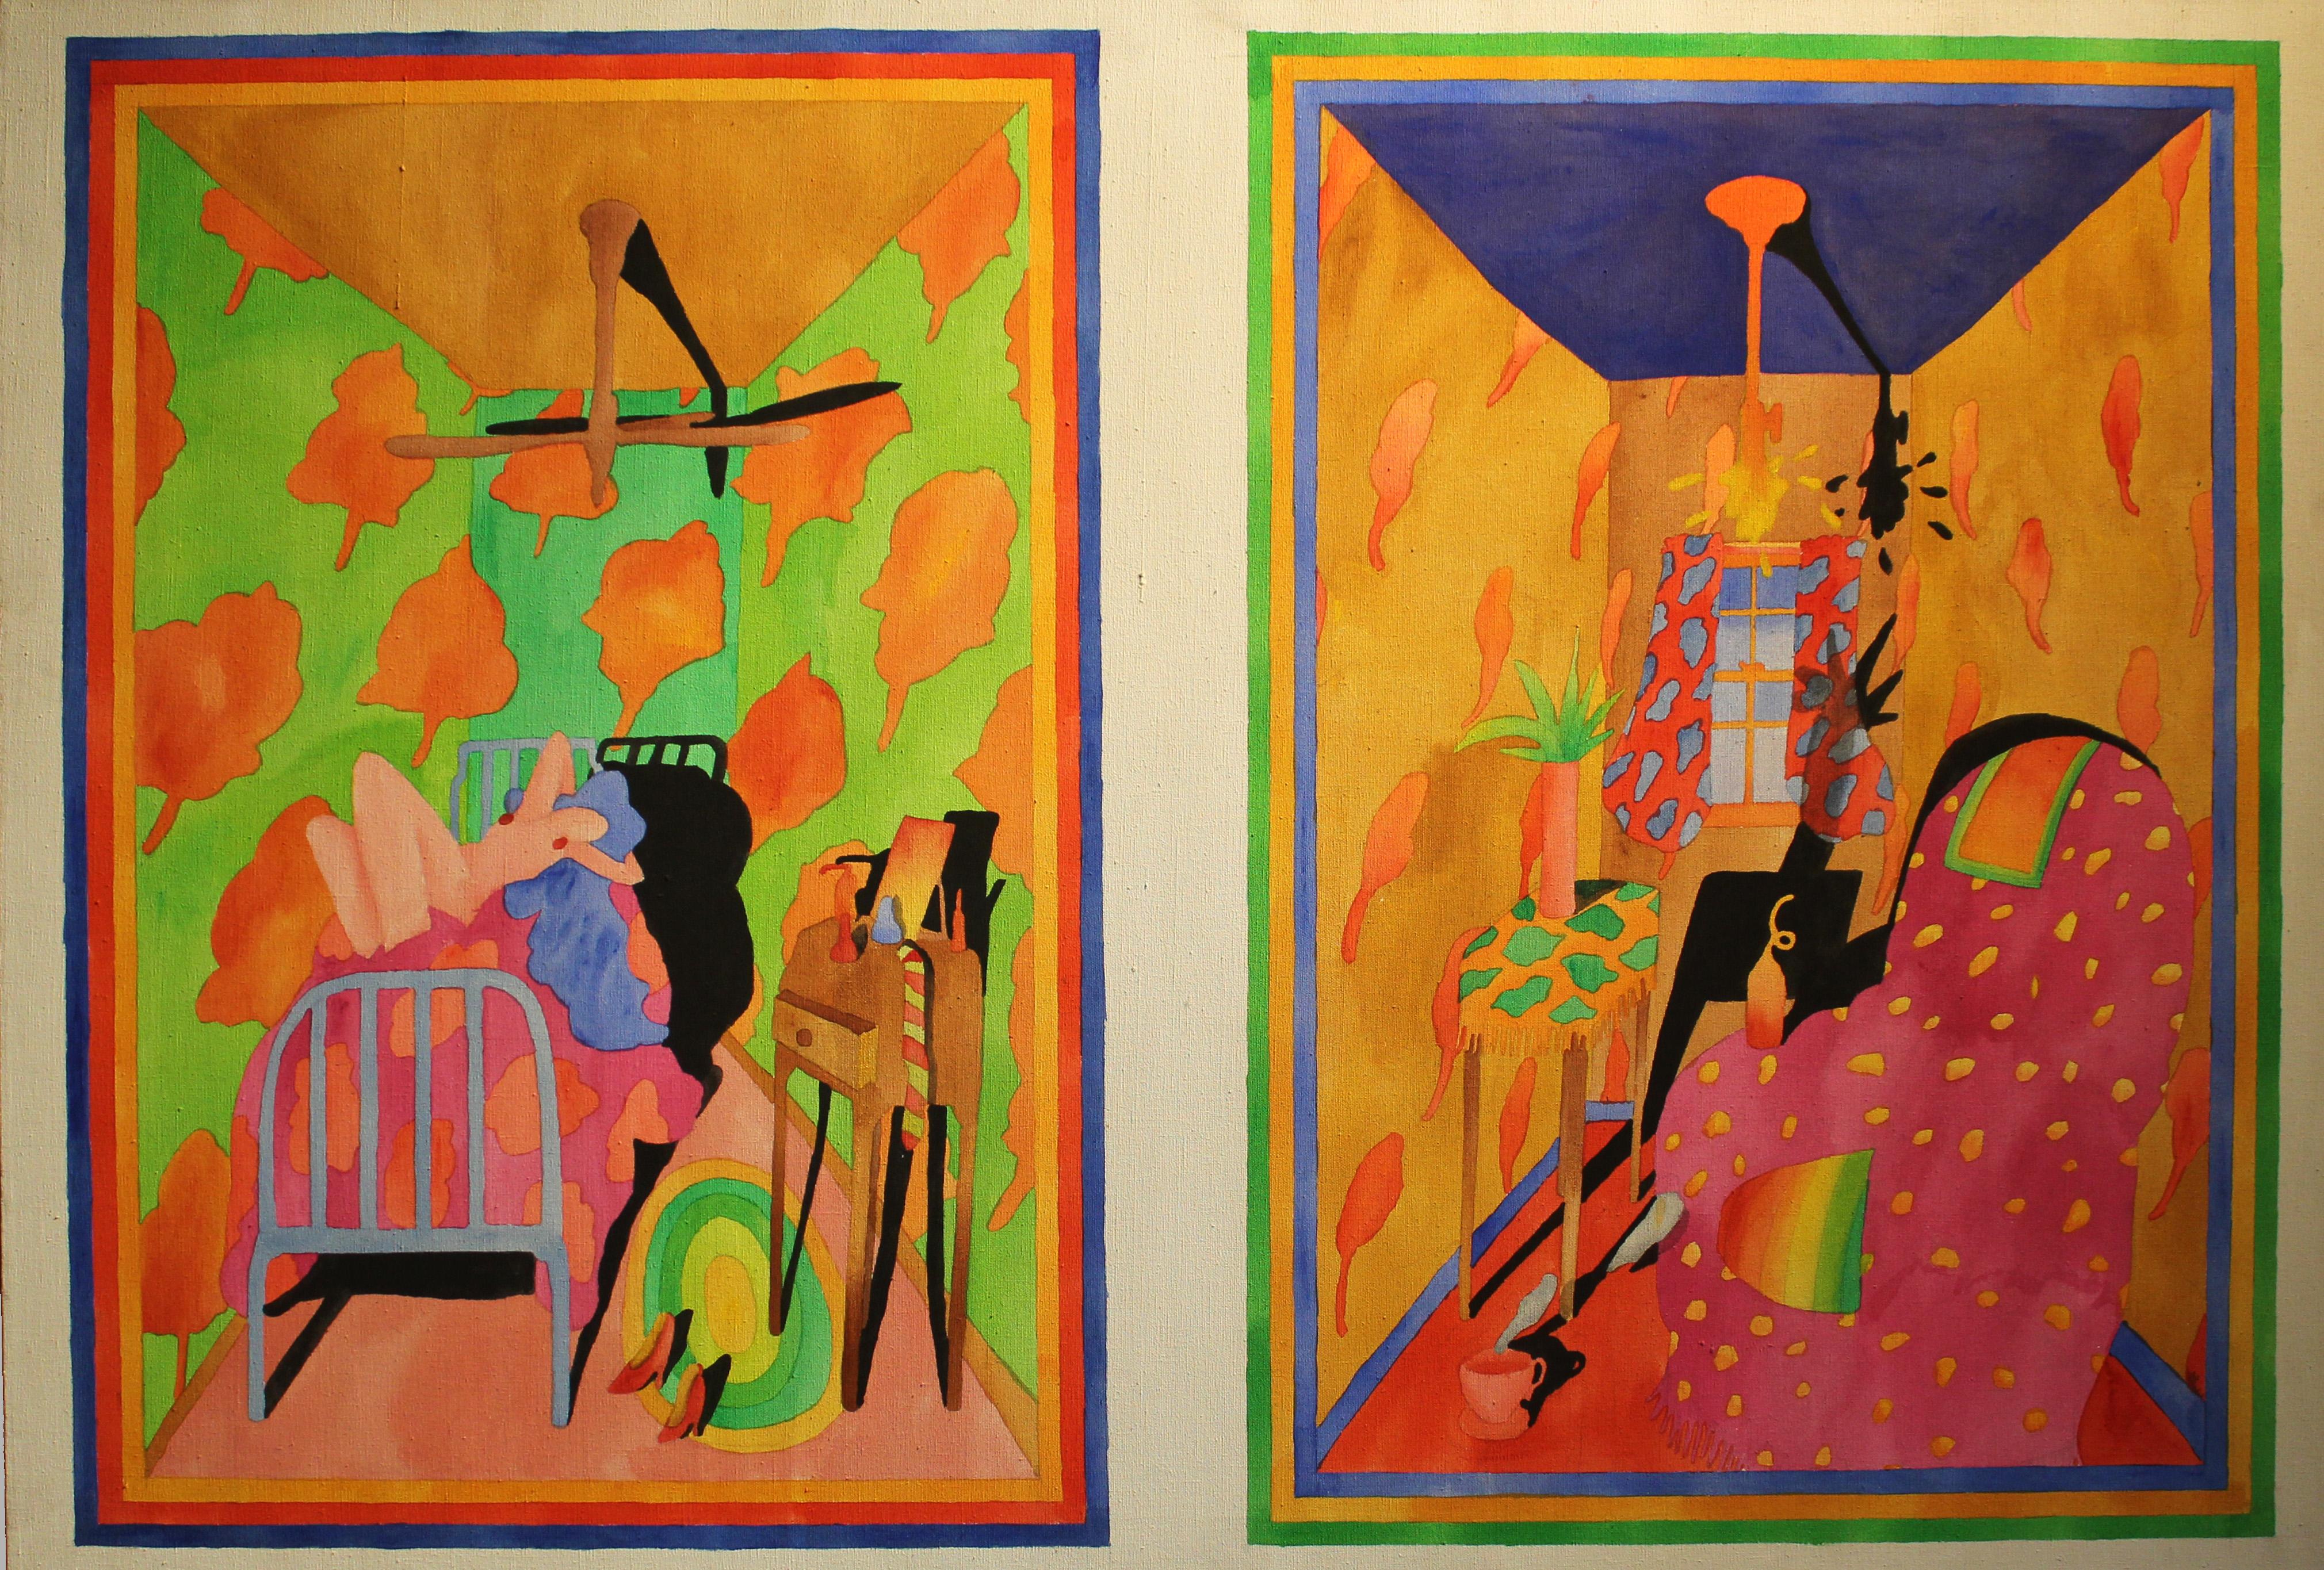 Amerikanisches Innenraum-Ölgemälde, Nude, 1970er Jahre, helle Neonfarben, Rosa, Grün, Blau   – Painting von Unknown